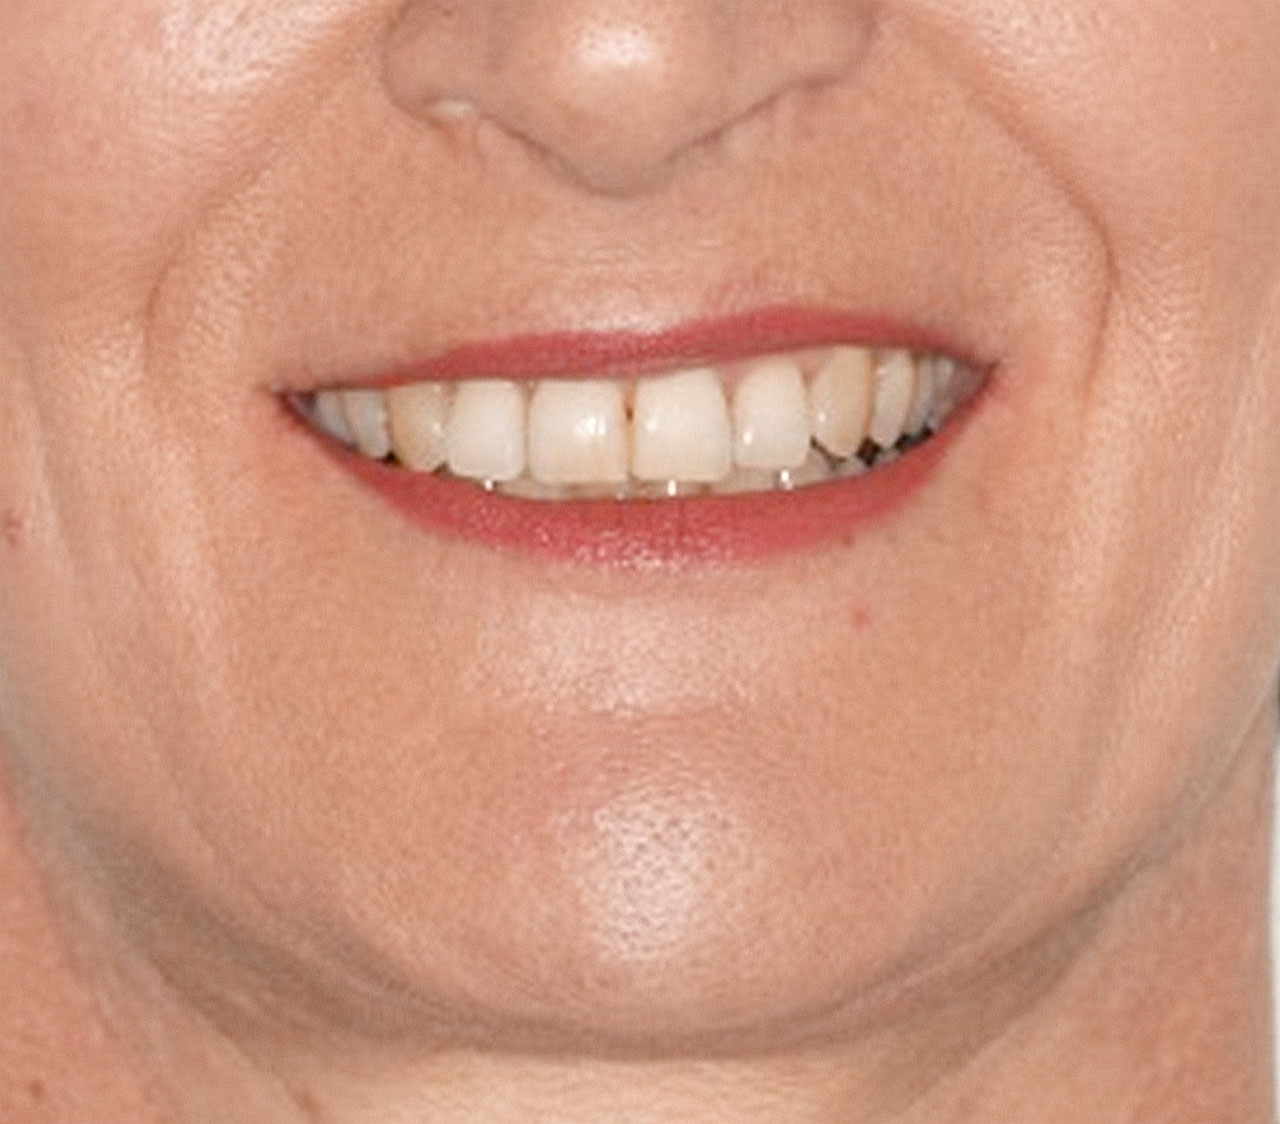 Abb. 20 ... und Endbefund. Vor allem durch die kombinierte Intrusion und Protrusion der oberen Frontzähne mit Beseitigung des „gummy smile“ konnte eine deutliche Verbesserung des ästhetischen Erscheinungsbildes erreicht werden.